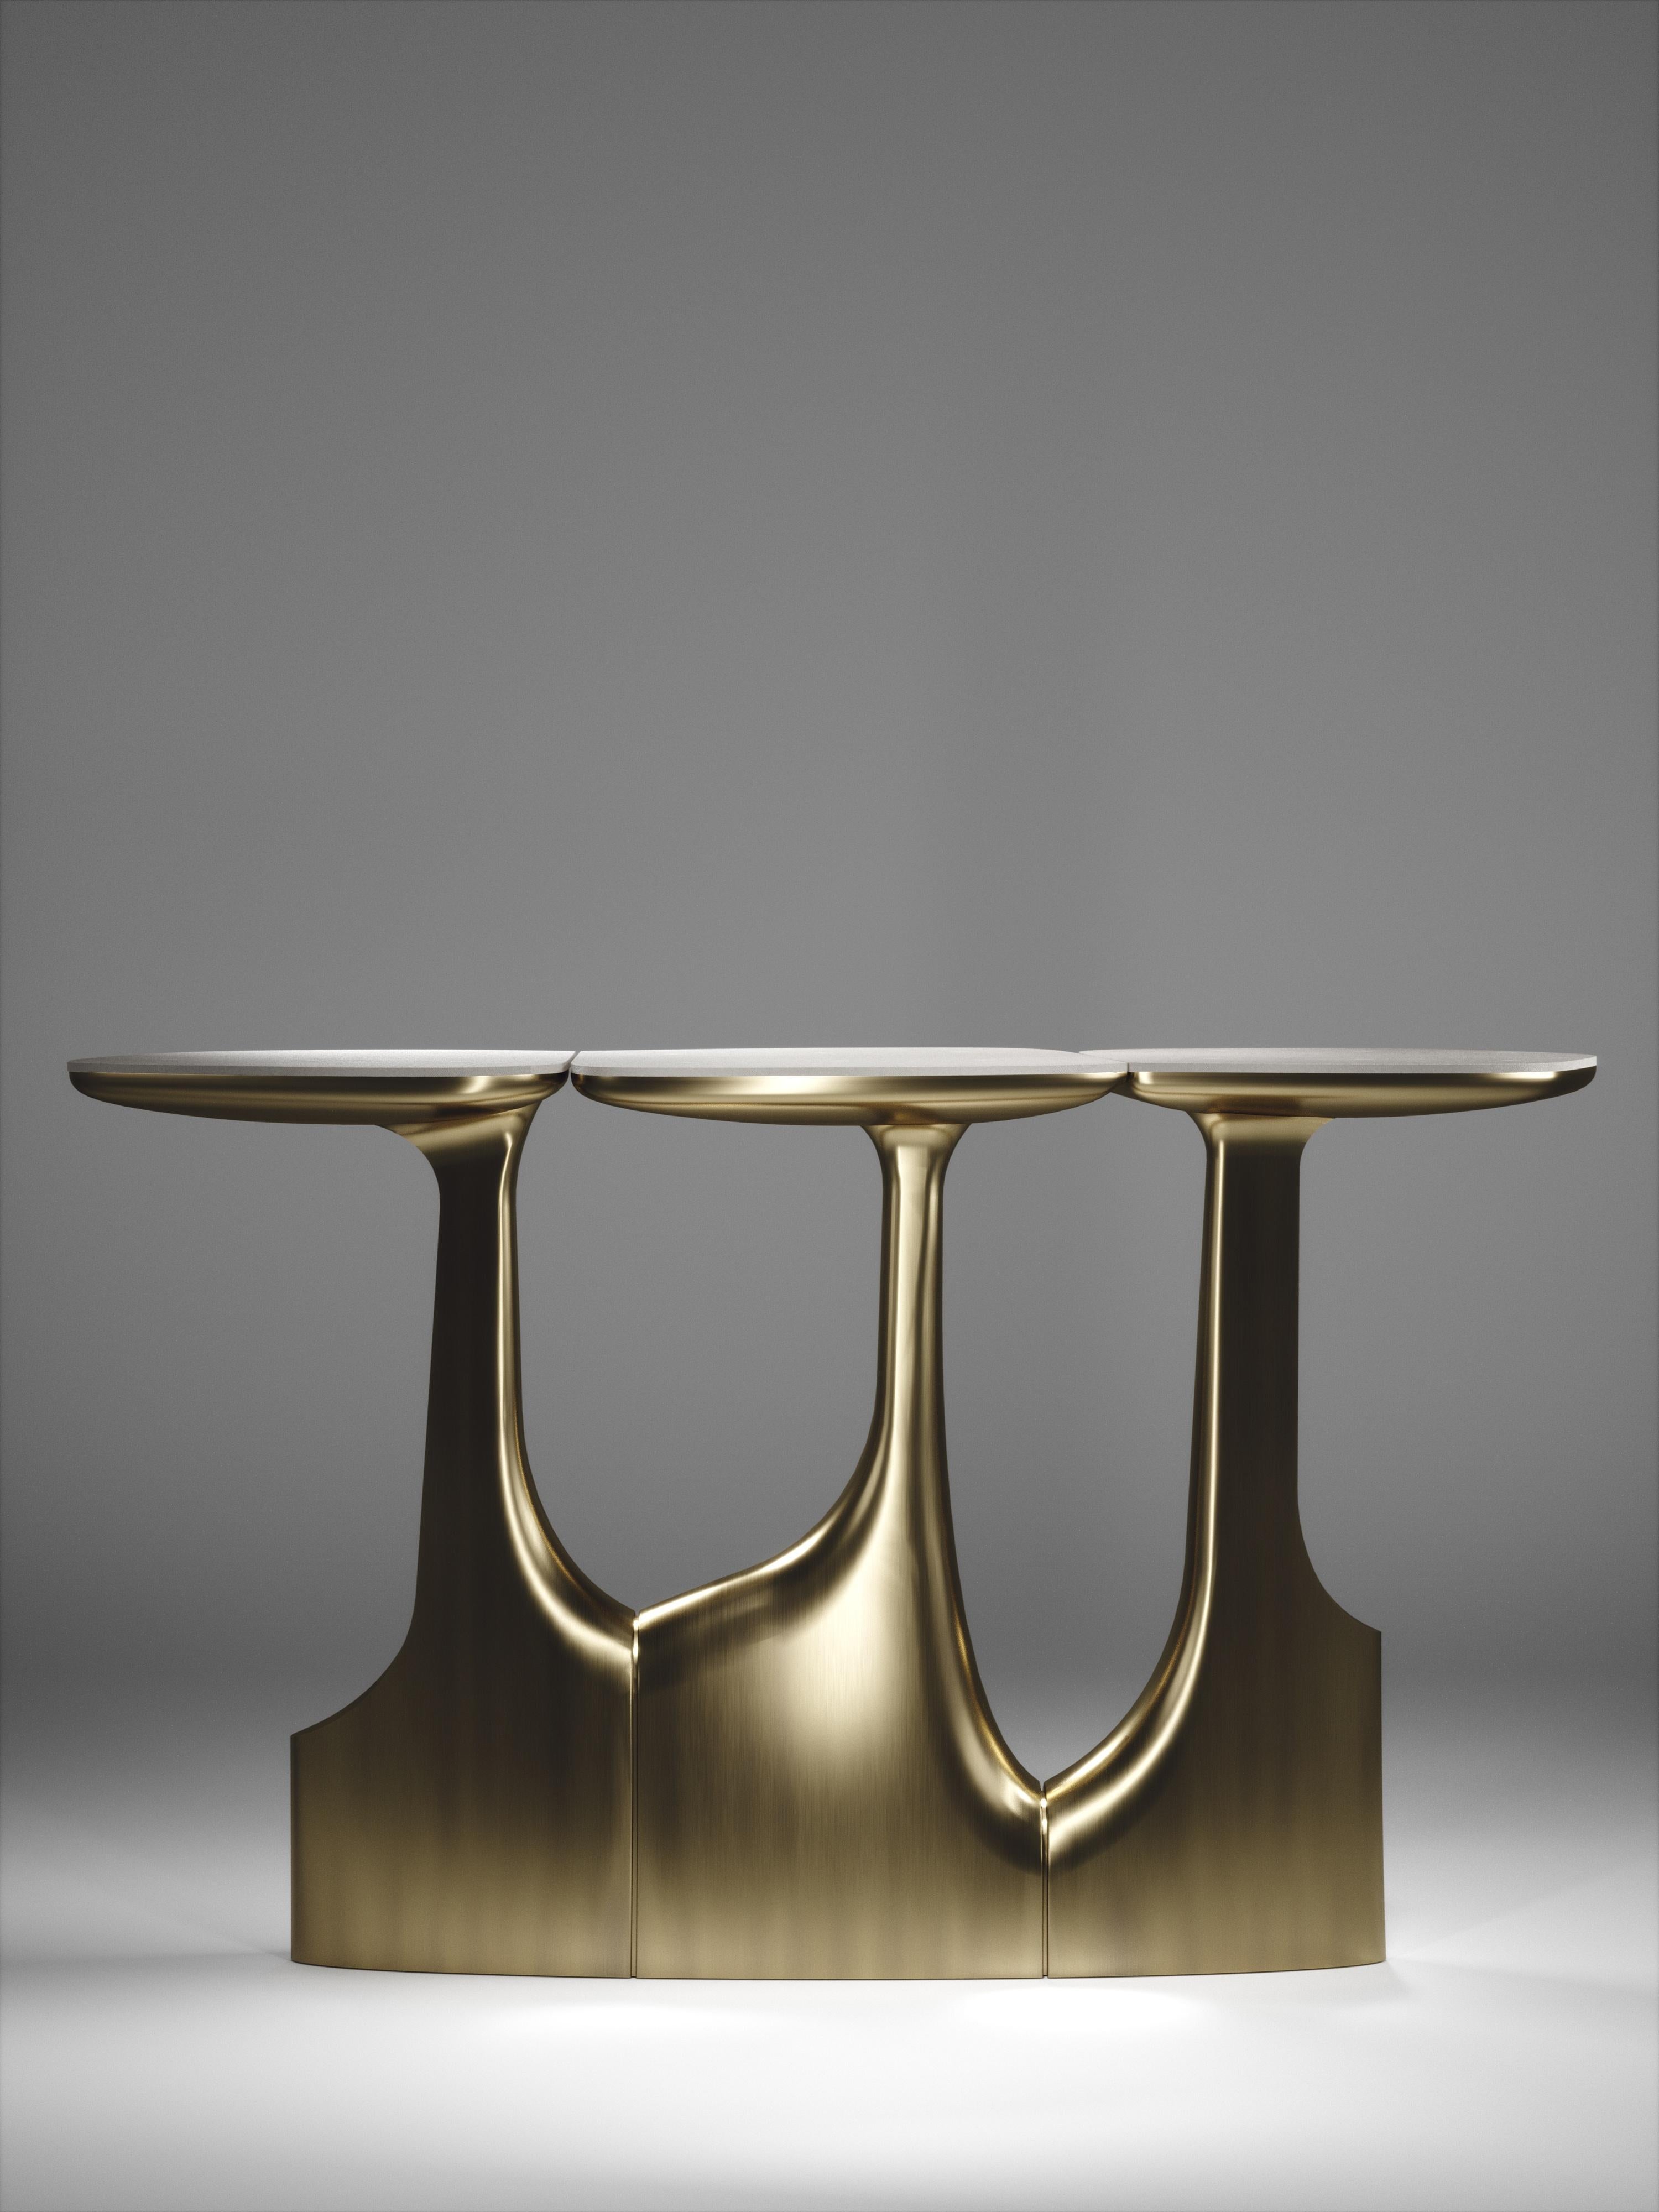 La table console triptyque de R&Y Augousti est une étonnante pièce sculpturale à multiples facettes. Les magnifiques détails gravés à la main sur la base en bronze-patine témoignent de l'incroyable travail artisanal d'Augousti. Les dessus sont